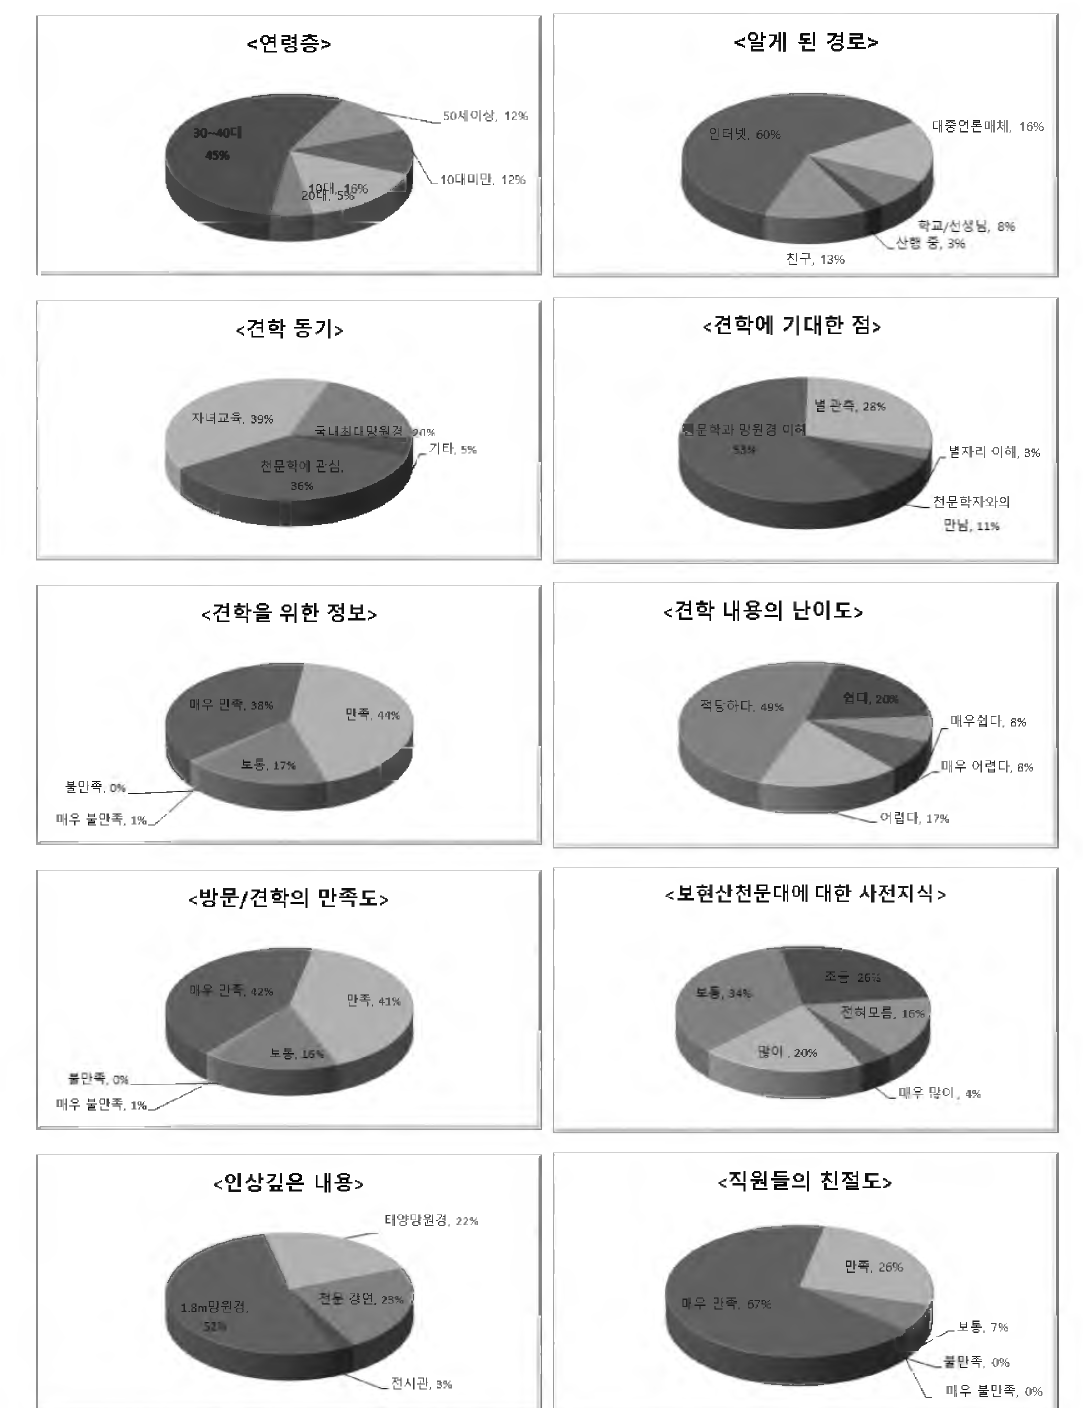 공개행사 설문 통계 도표